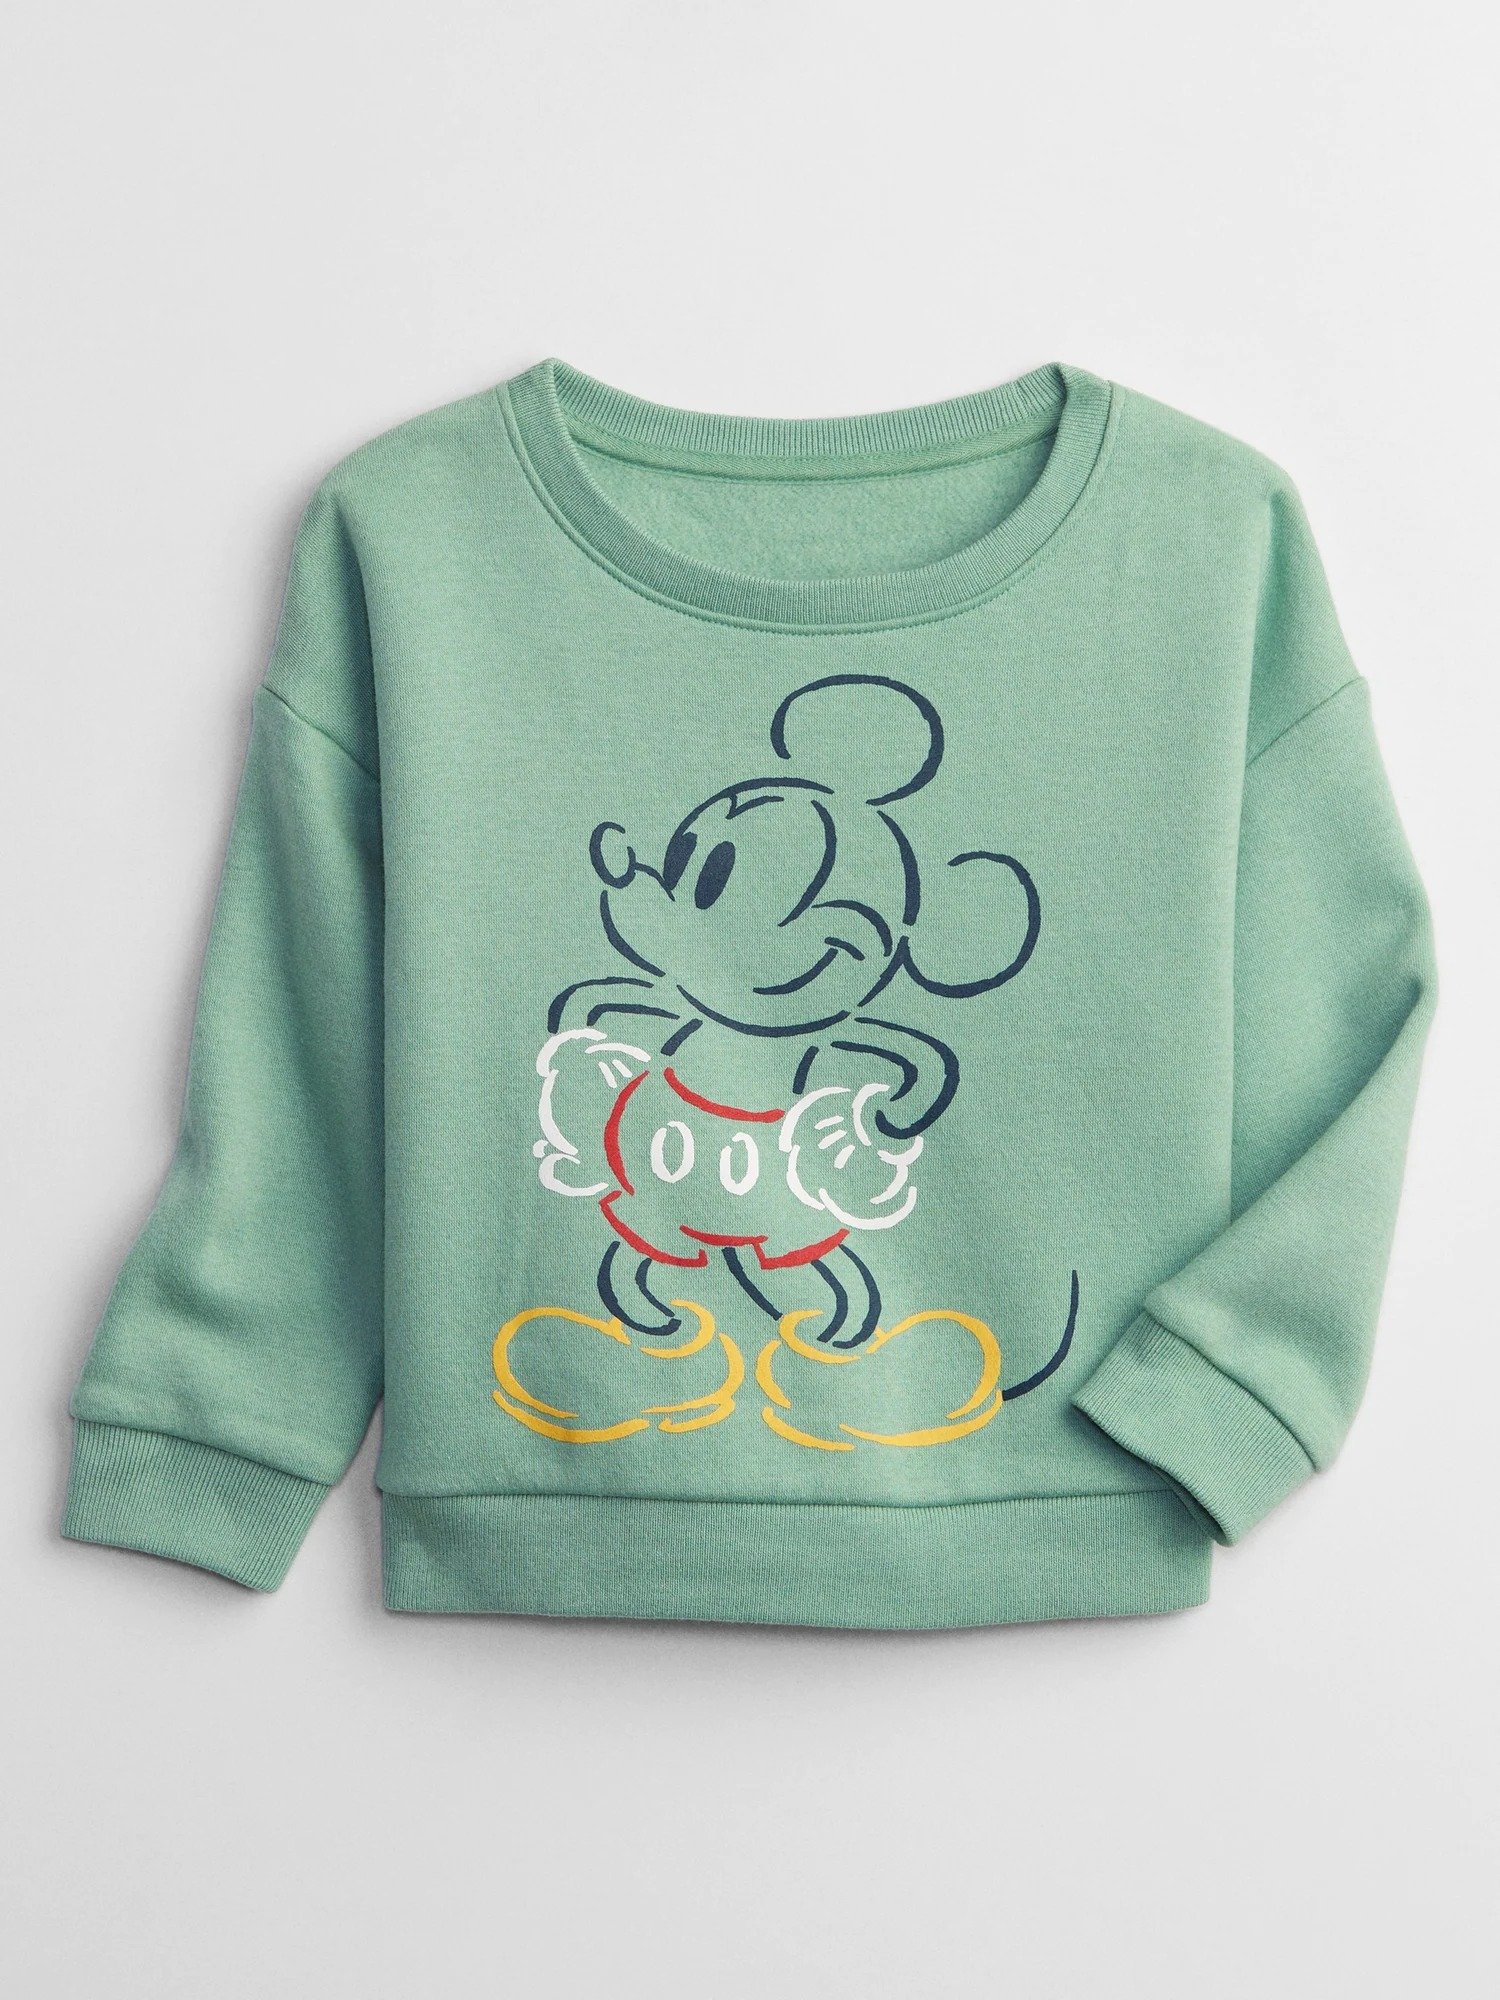 Disney Mickey Mouse Bisiklet Yaka Sweatshirt product image